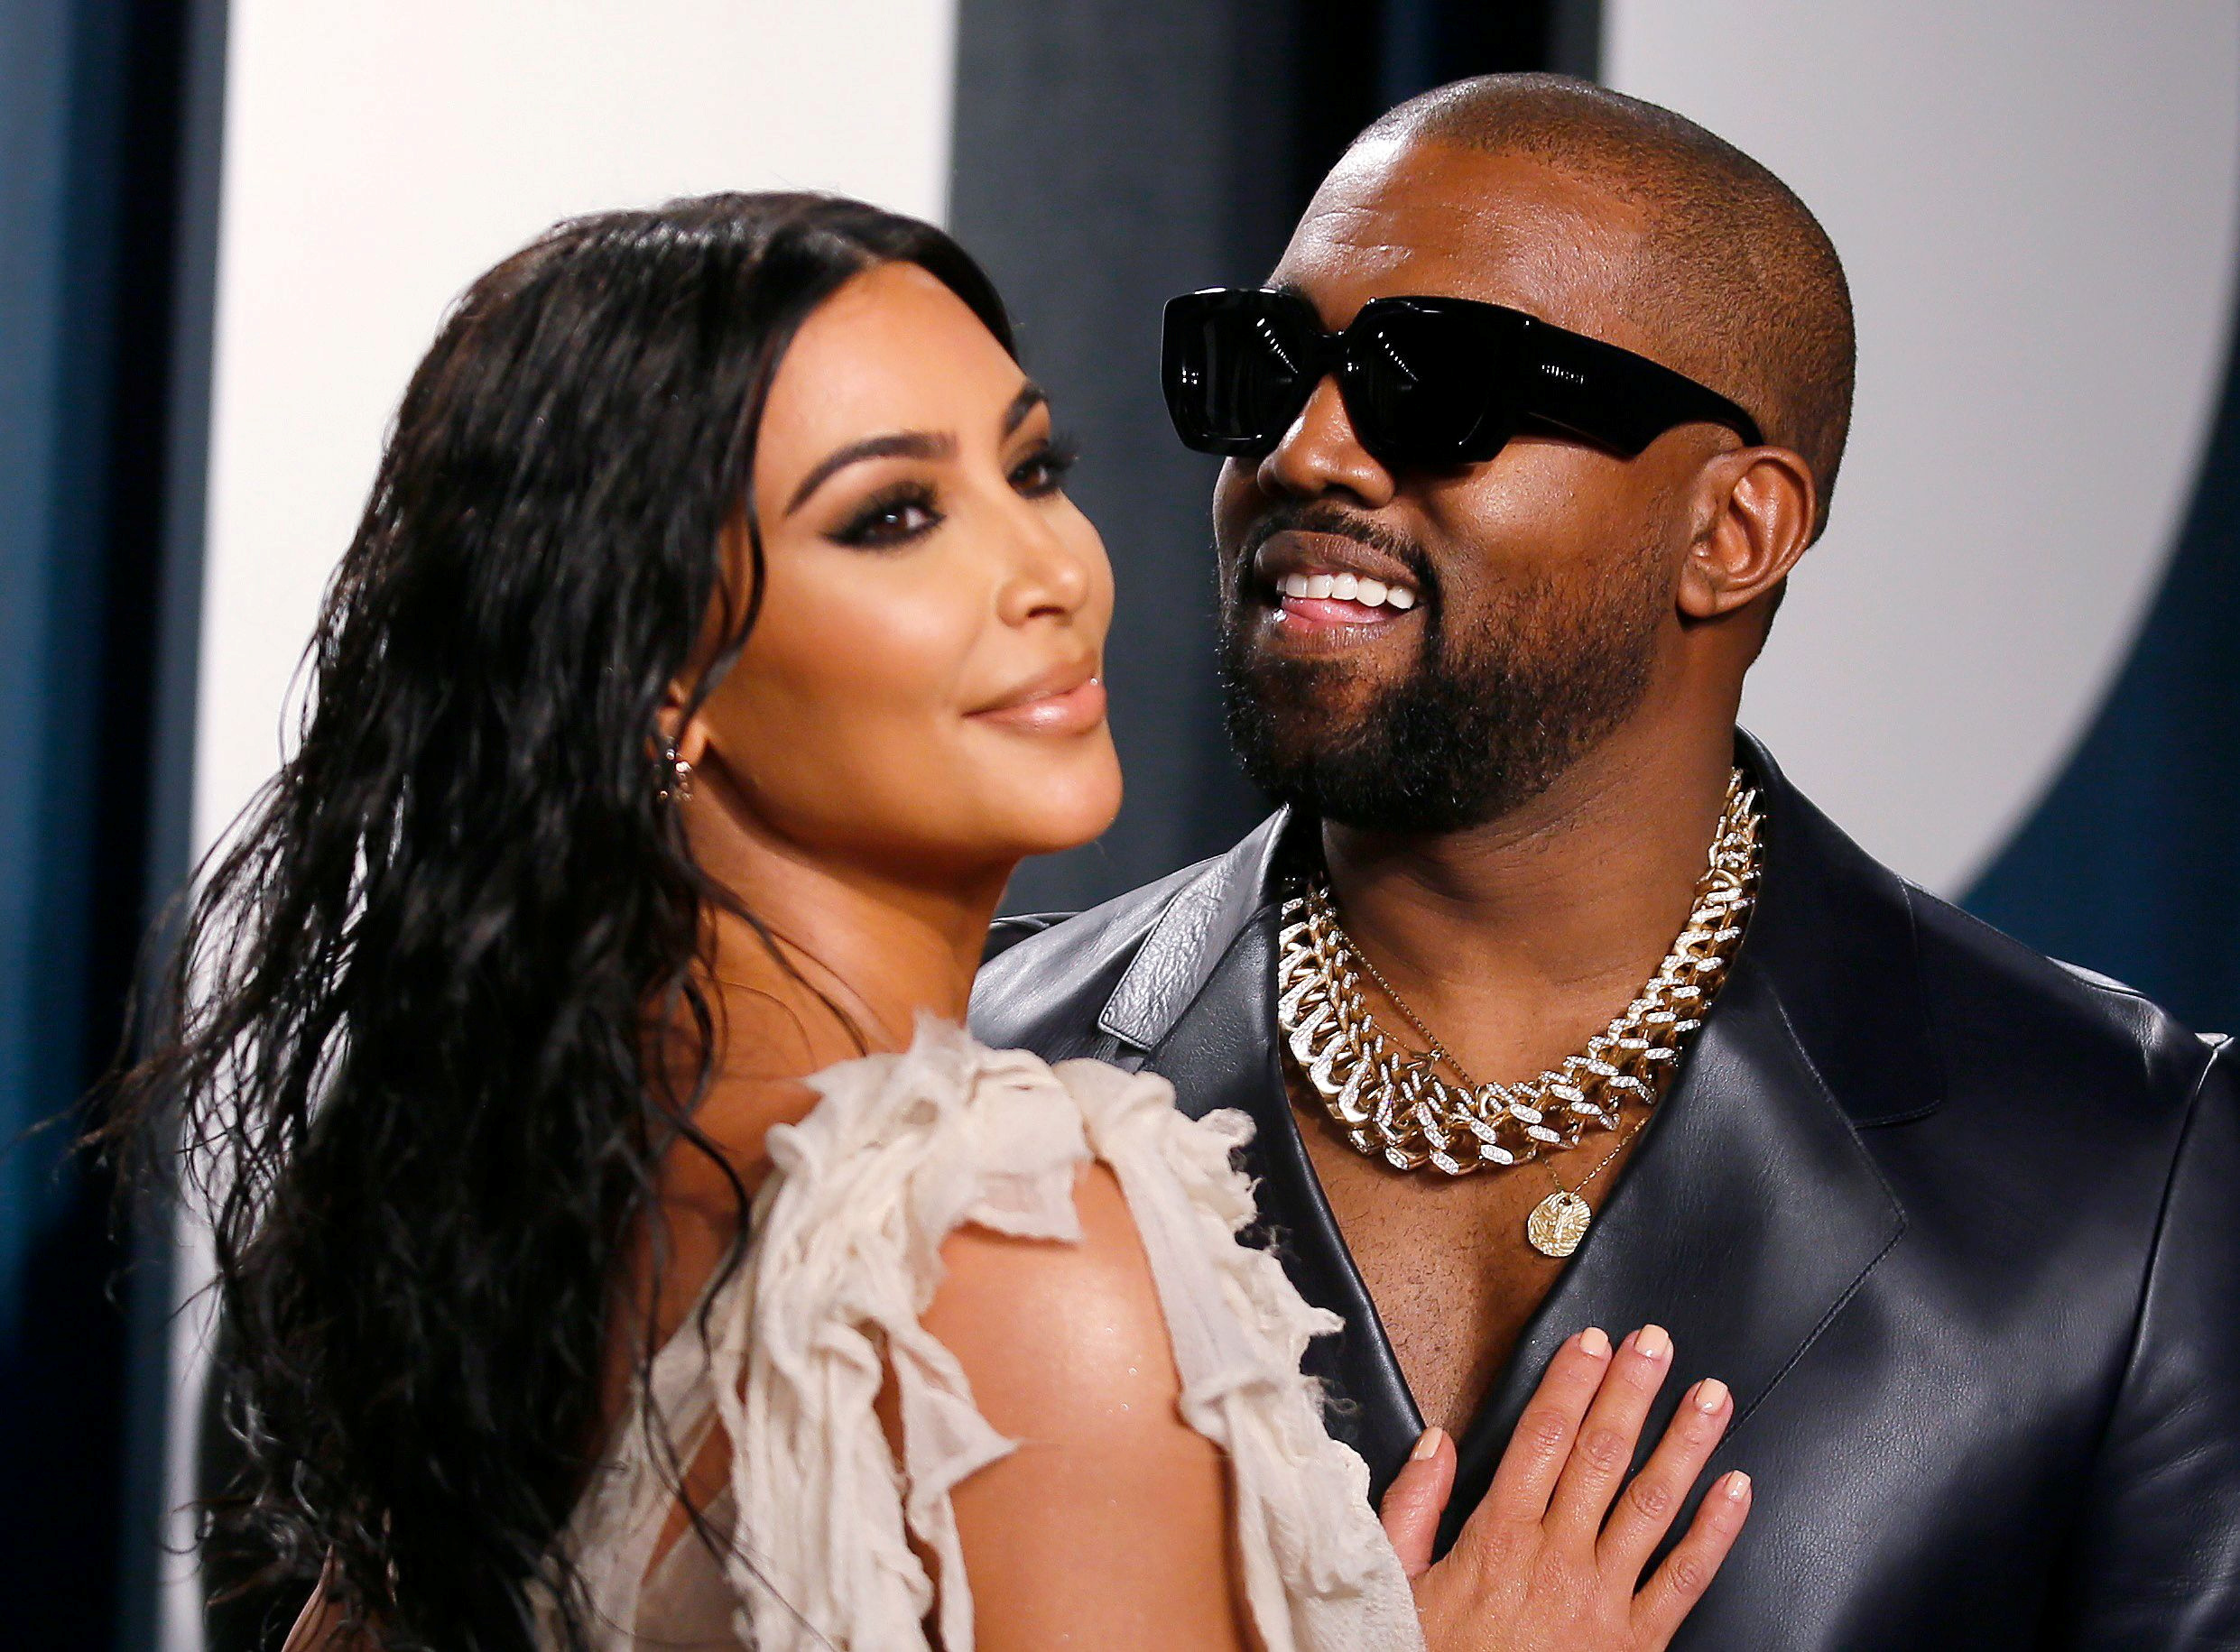 Foto: Kim Kardashian West en Kanye West. Bron: REUTERS/Danny Moloshok